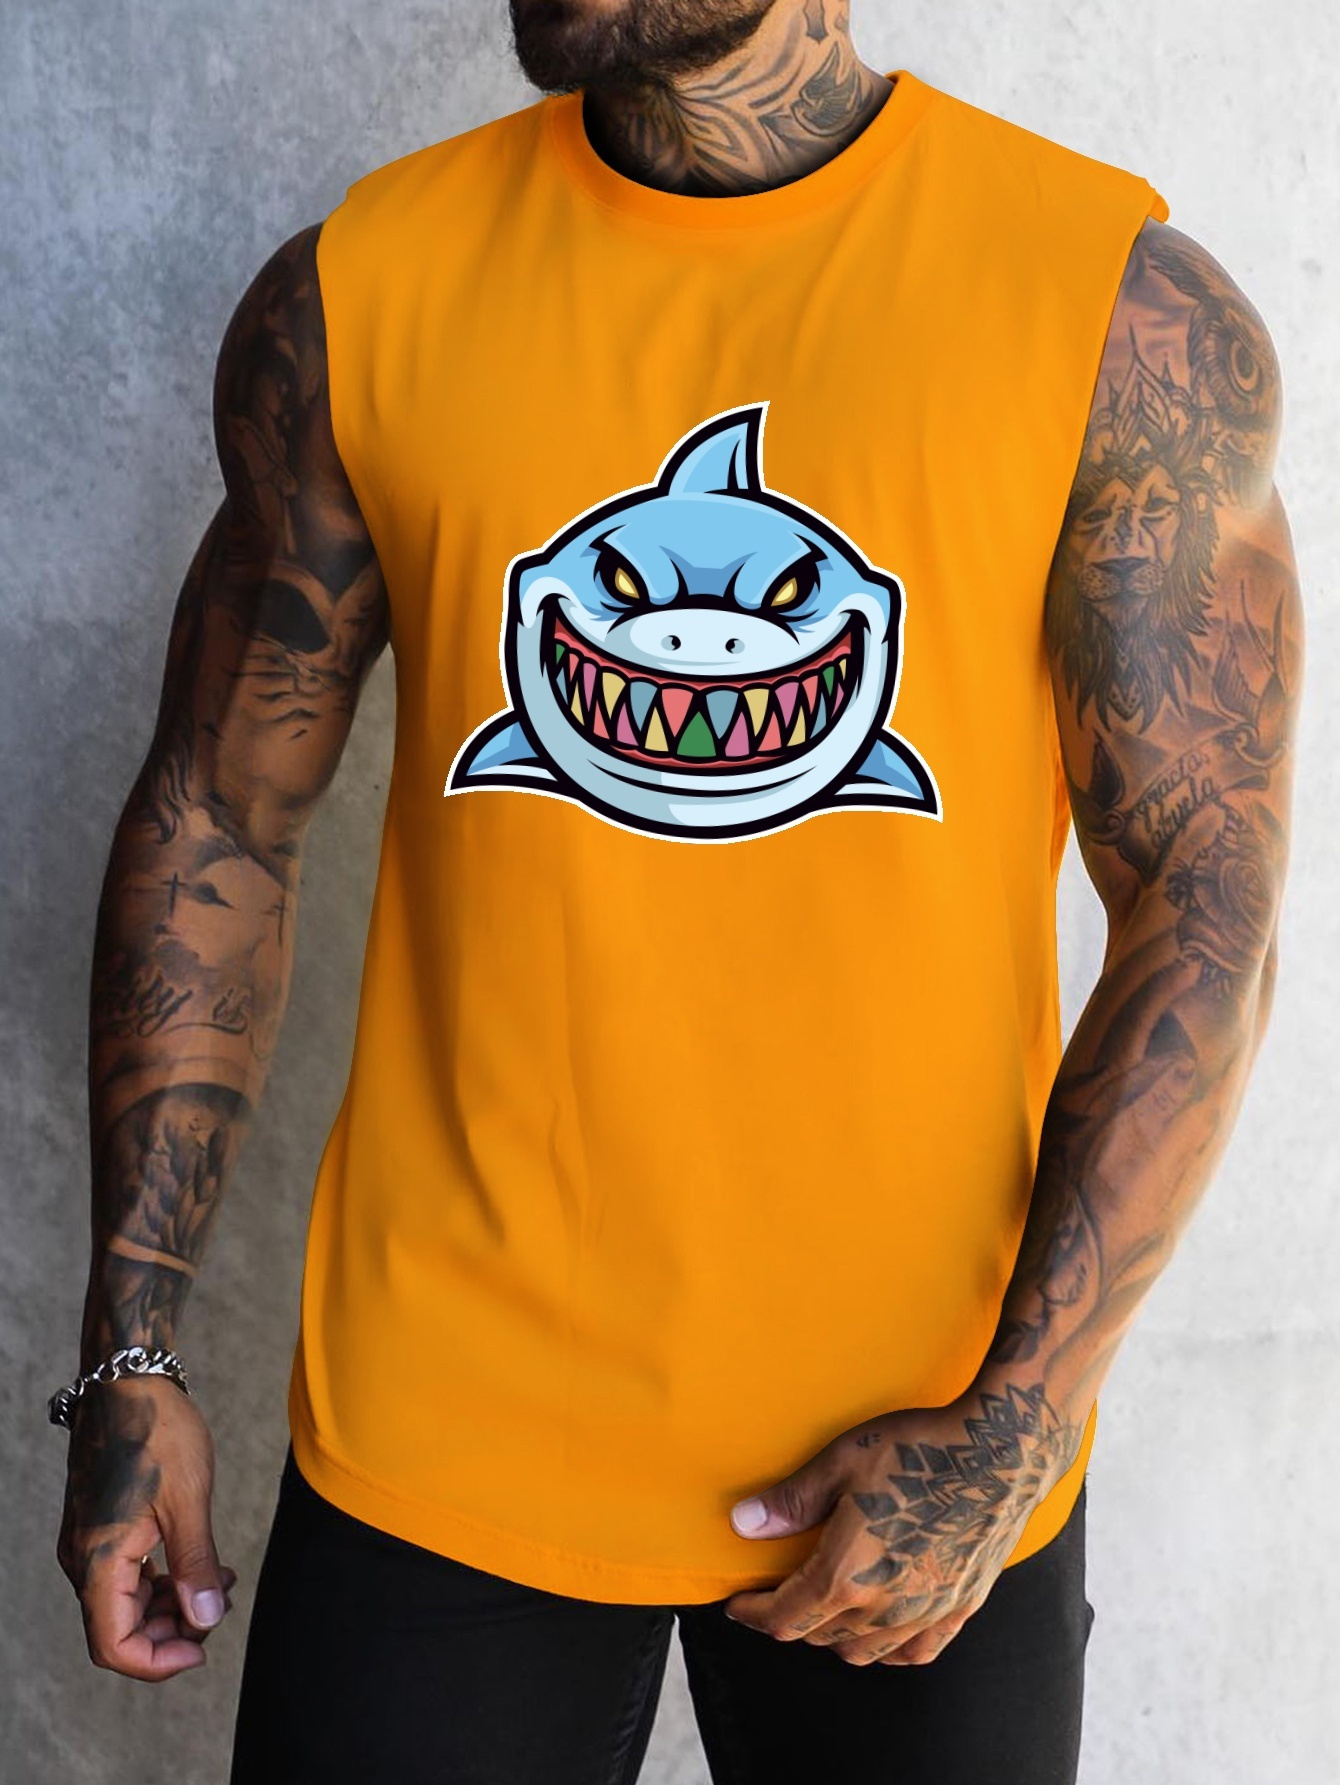 Shark Tank Top, Workout Tank Top for Women, Shark Shirt